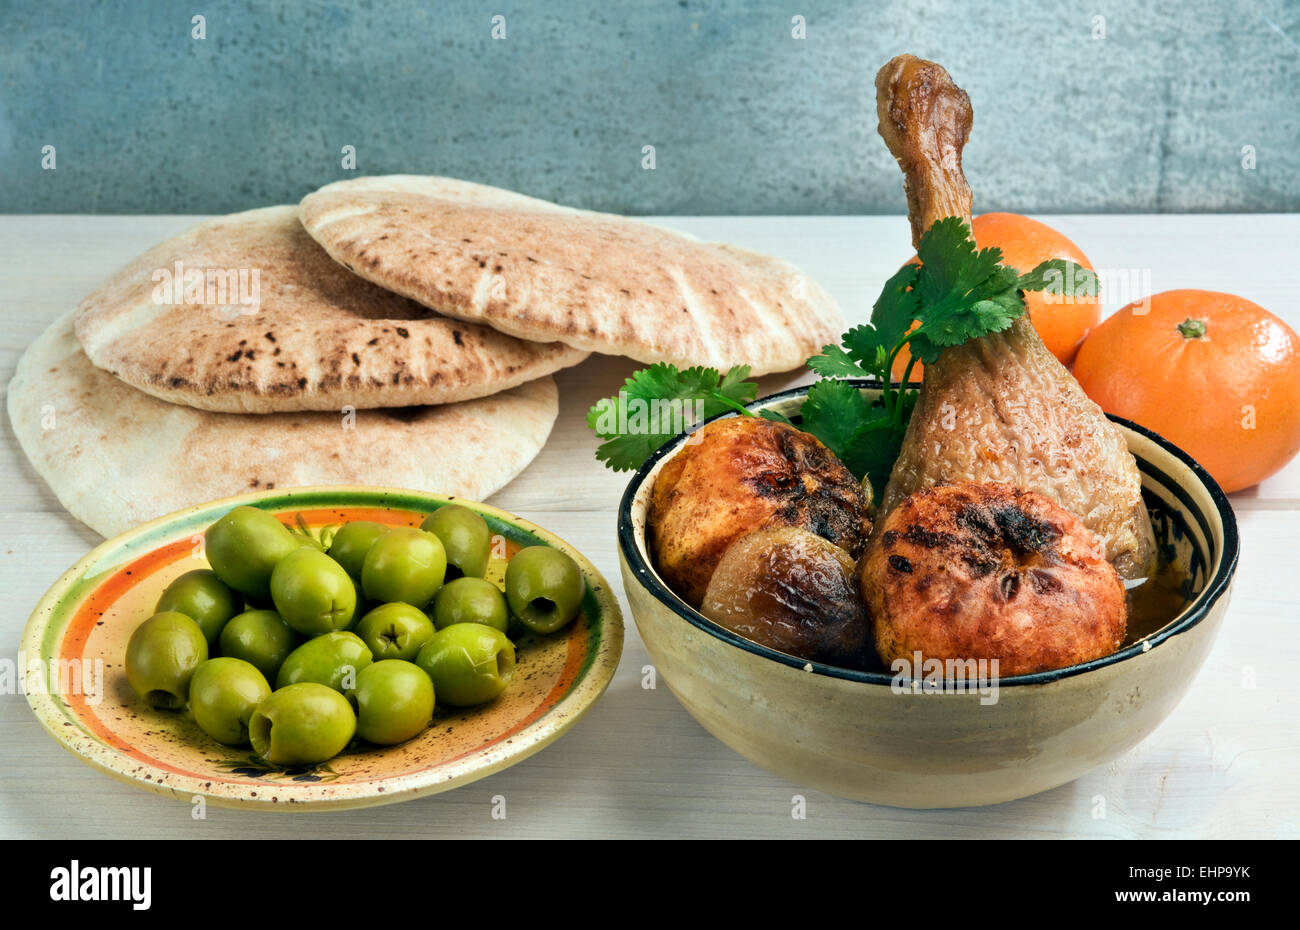 Marokkanische Ente Bein Tajine mit Mandarinen, Zwiebeln und frischer Koriander, serviert mit Pita Brot und grünen Oliven. Stockfoto